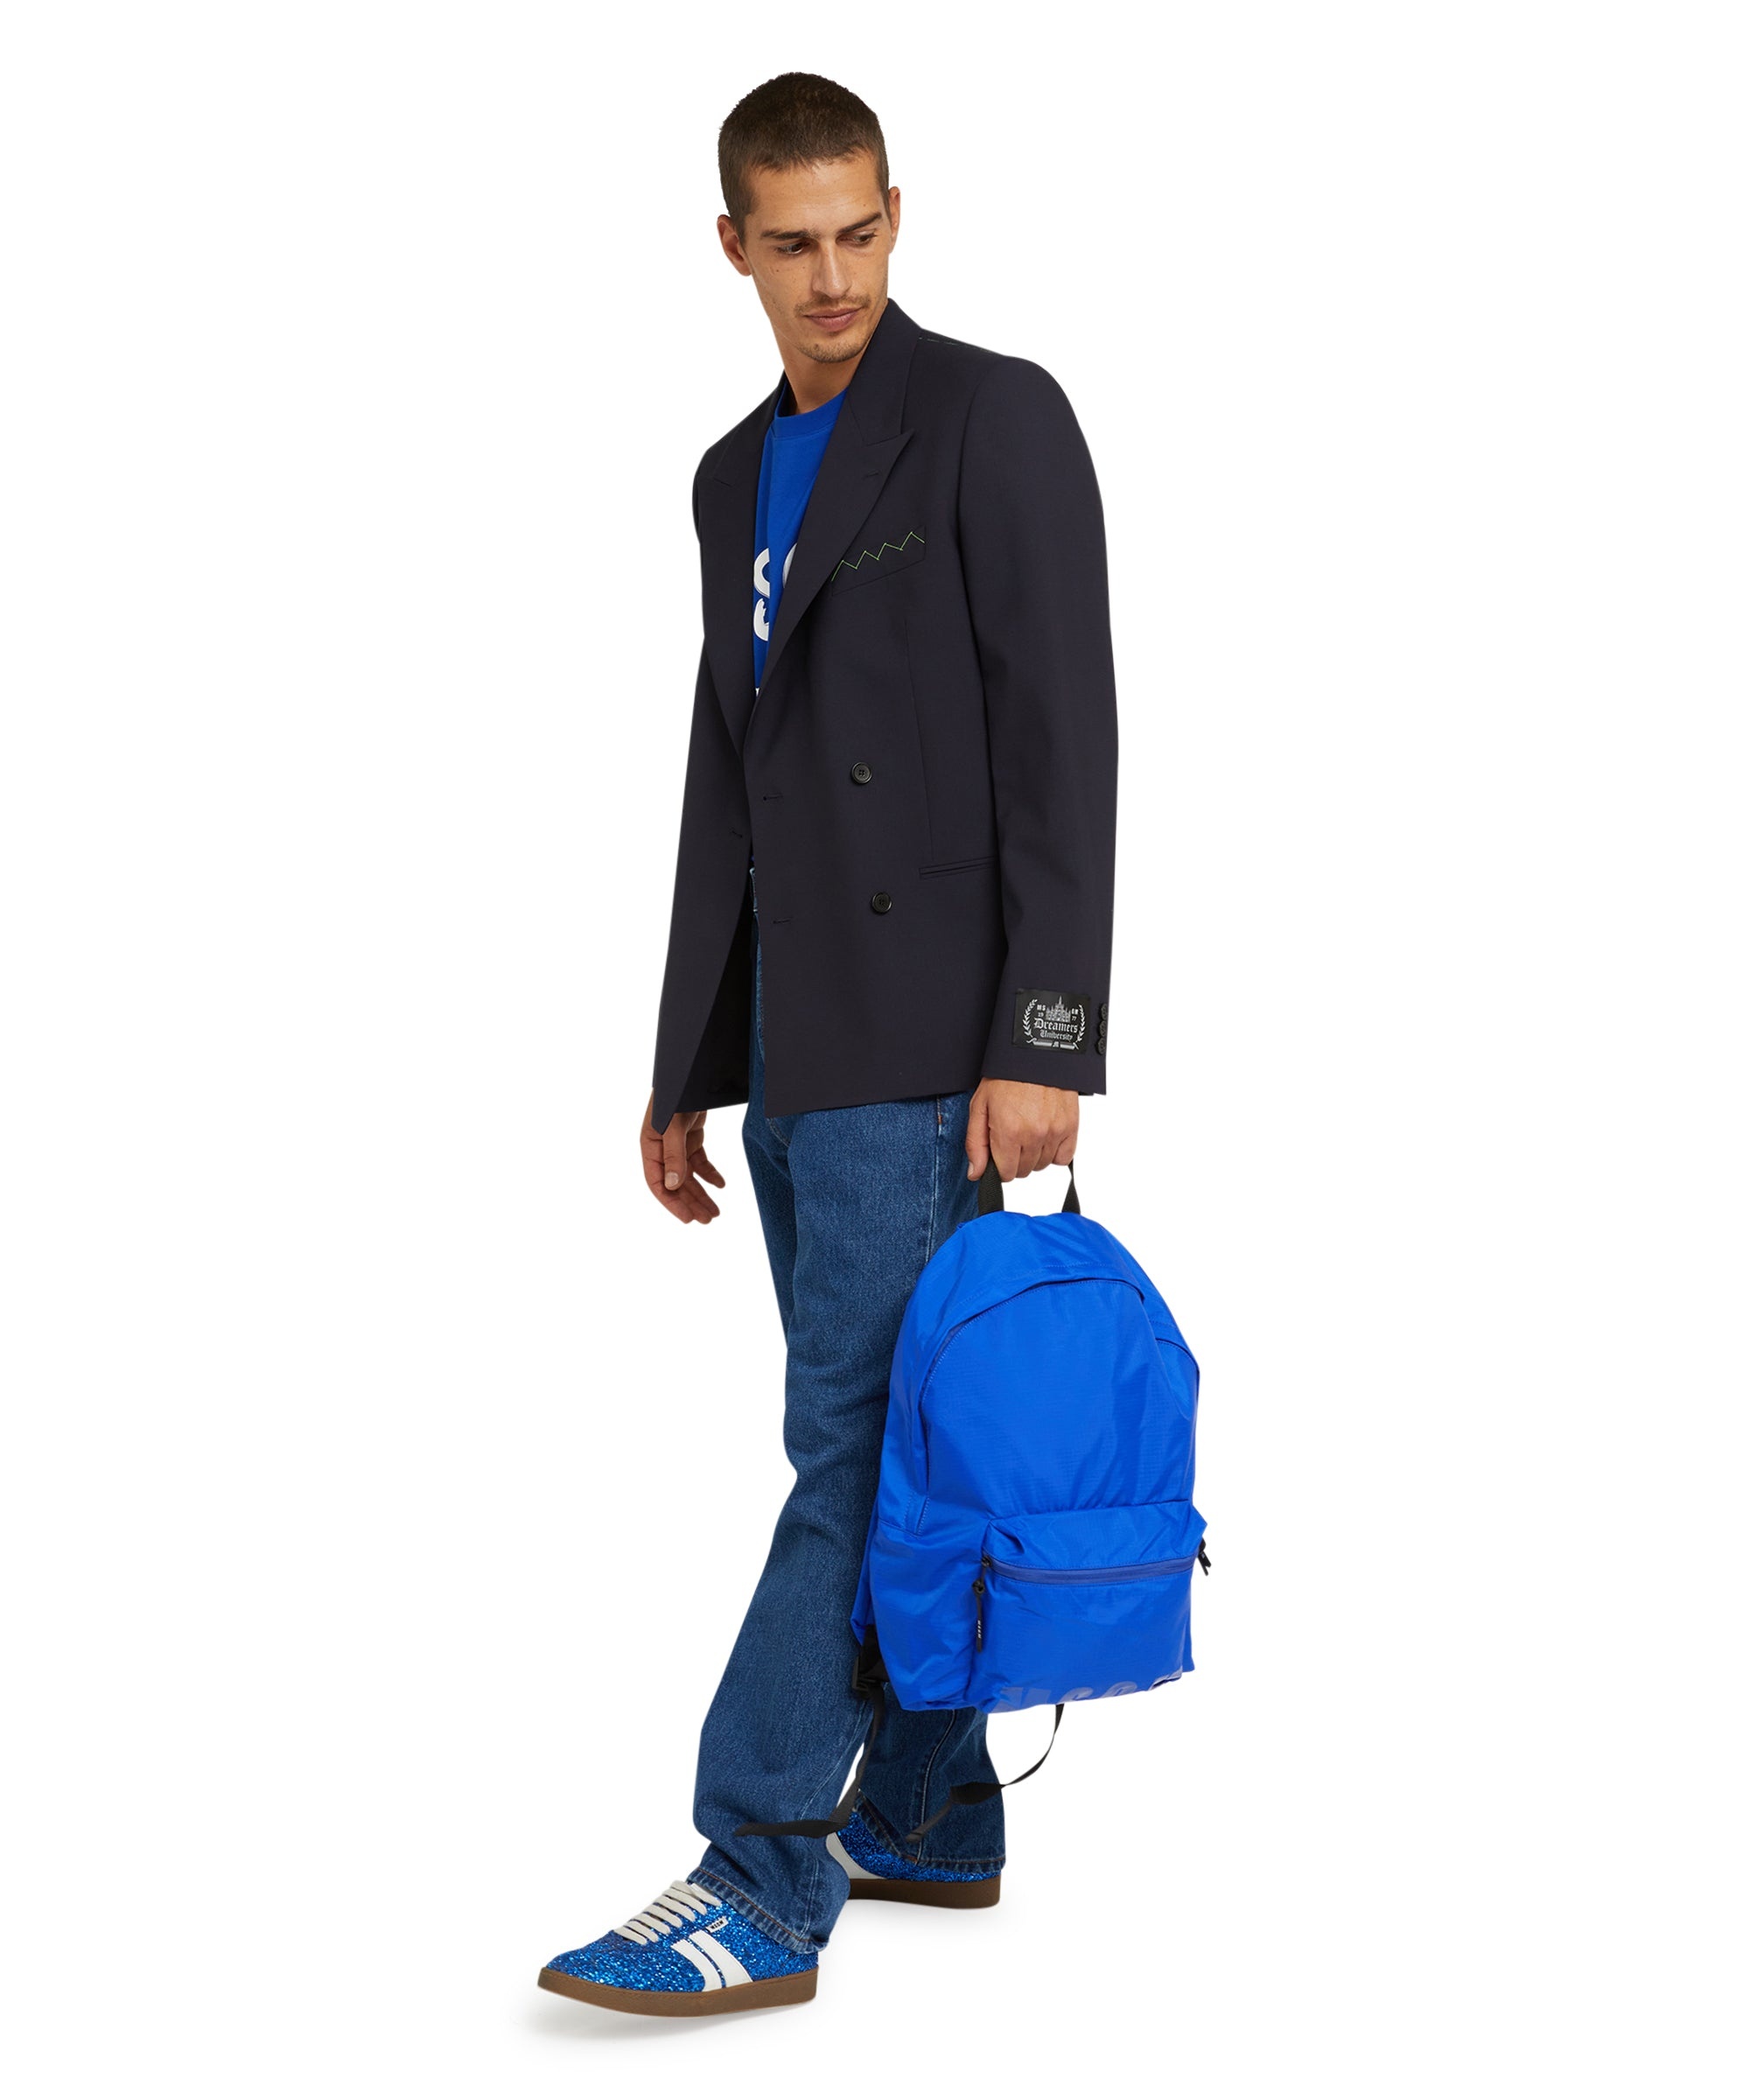 "Signature Iconic Nylon" backpack - 5